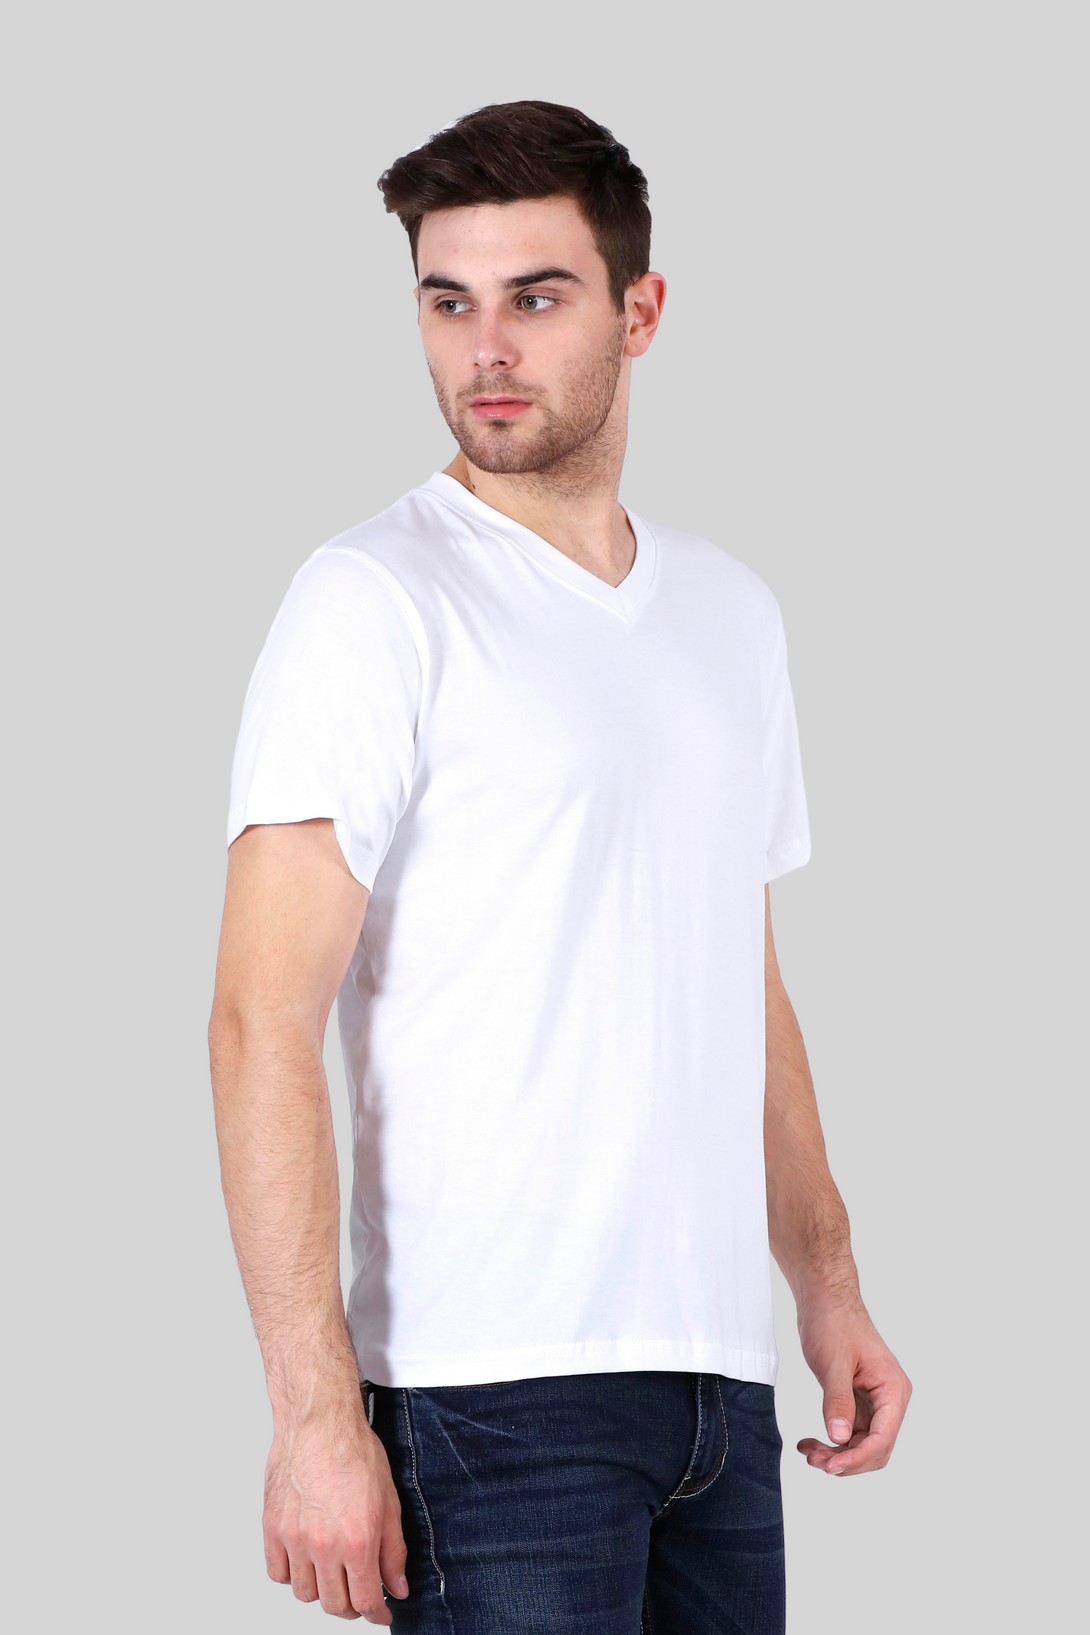 White V Neck T-Shirt For Men - WowWaves - 6